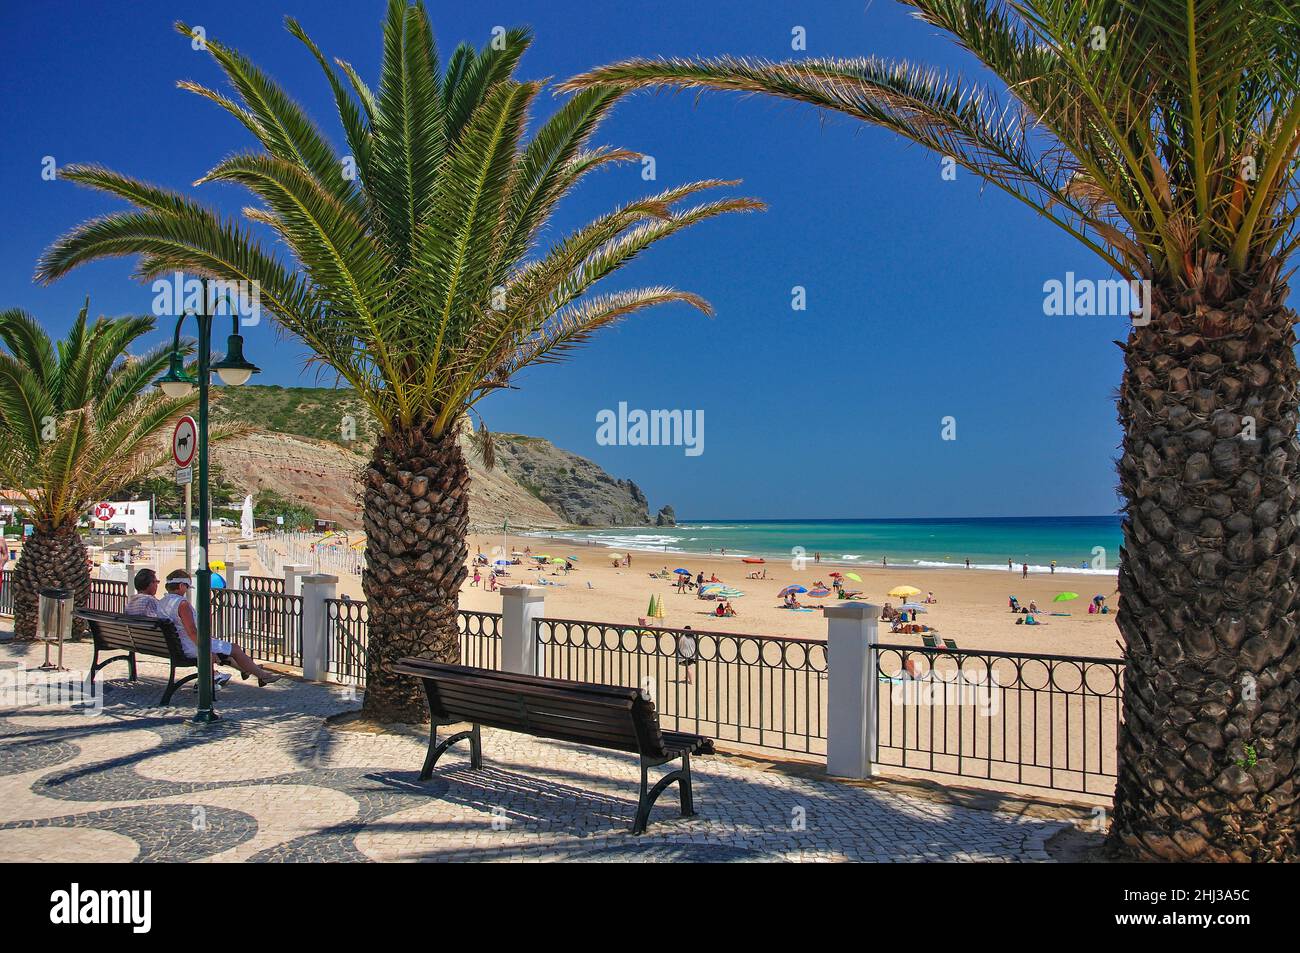 Beach promenade view, Praia da Luz, Algarve Region, Portugal Stock Photo